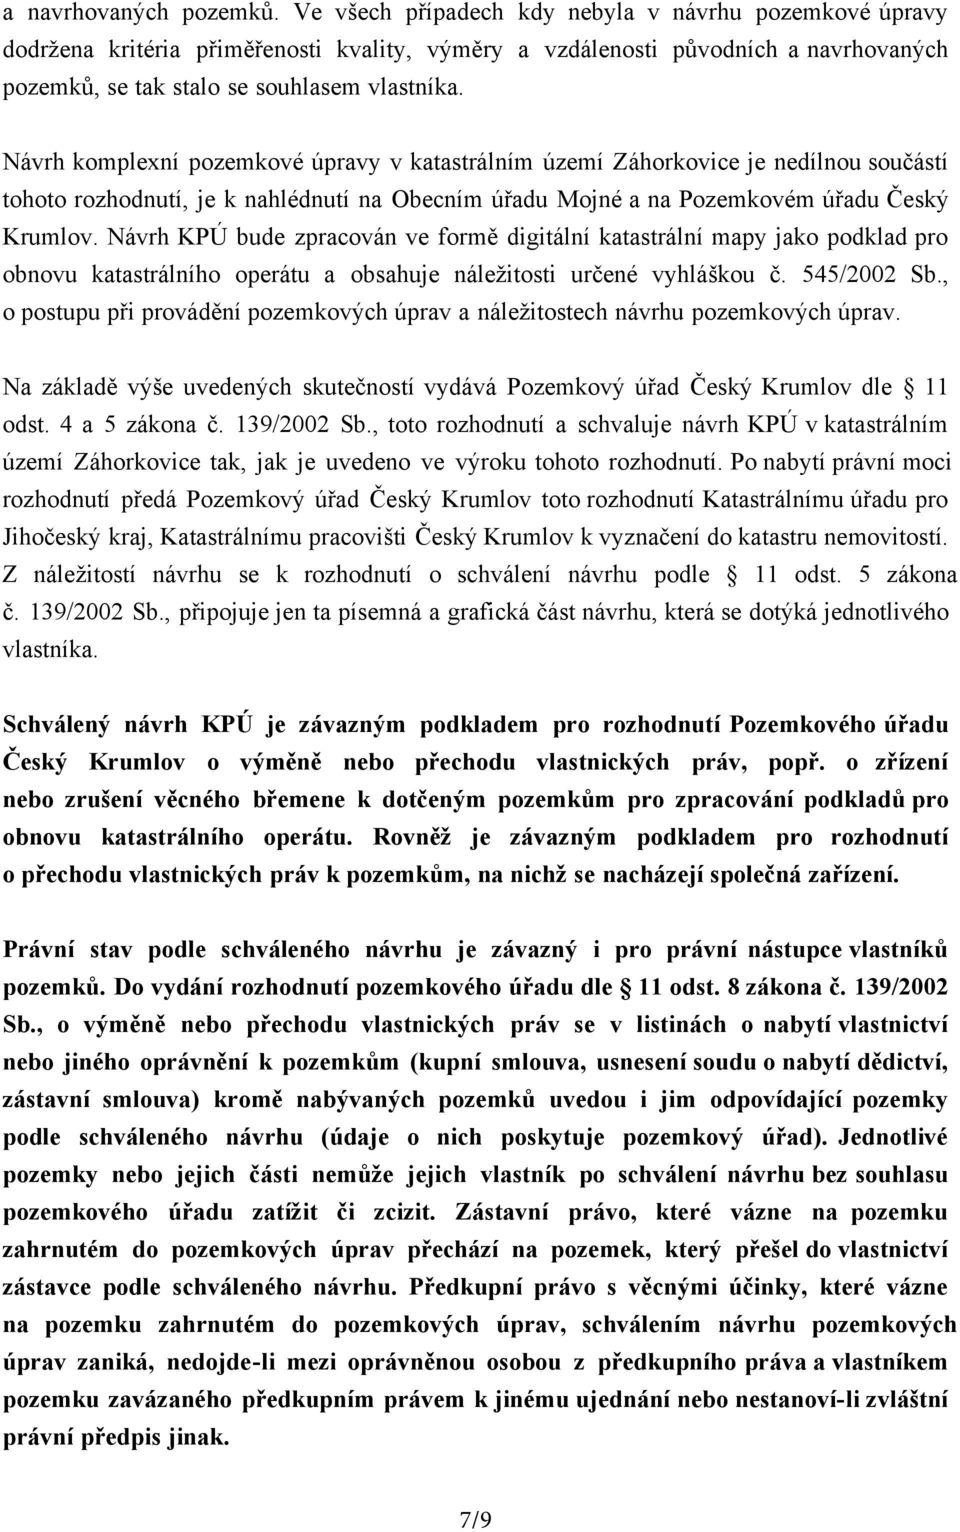 Návrh komplexní pozemkové úpravy v katastrálním území Záhorkovice je nedílnou součástí tohoto rozhodnutí, je k nahlédnutí na Obecním úřadu Mojné a na Pozemkovém úřadu Český Krumlov.